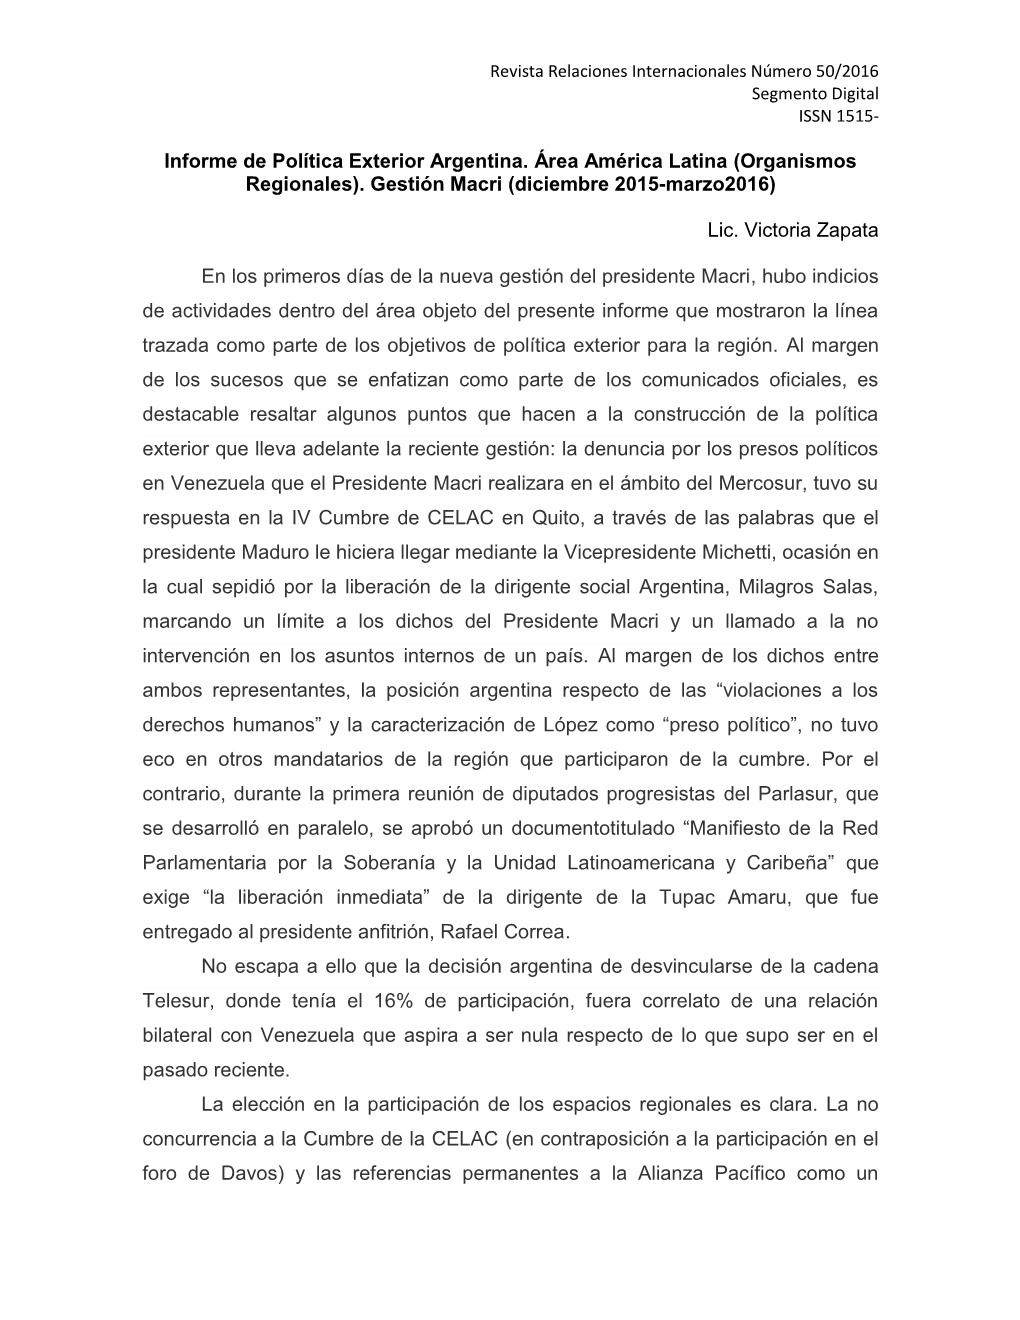 Gestión Macri (Diciembre 2015-Marzo2016)